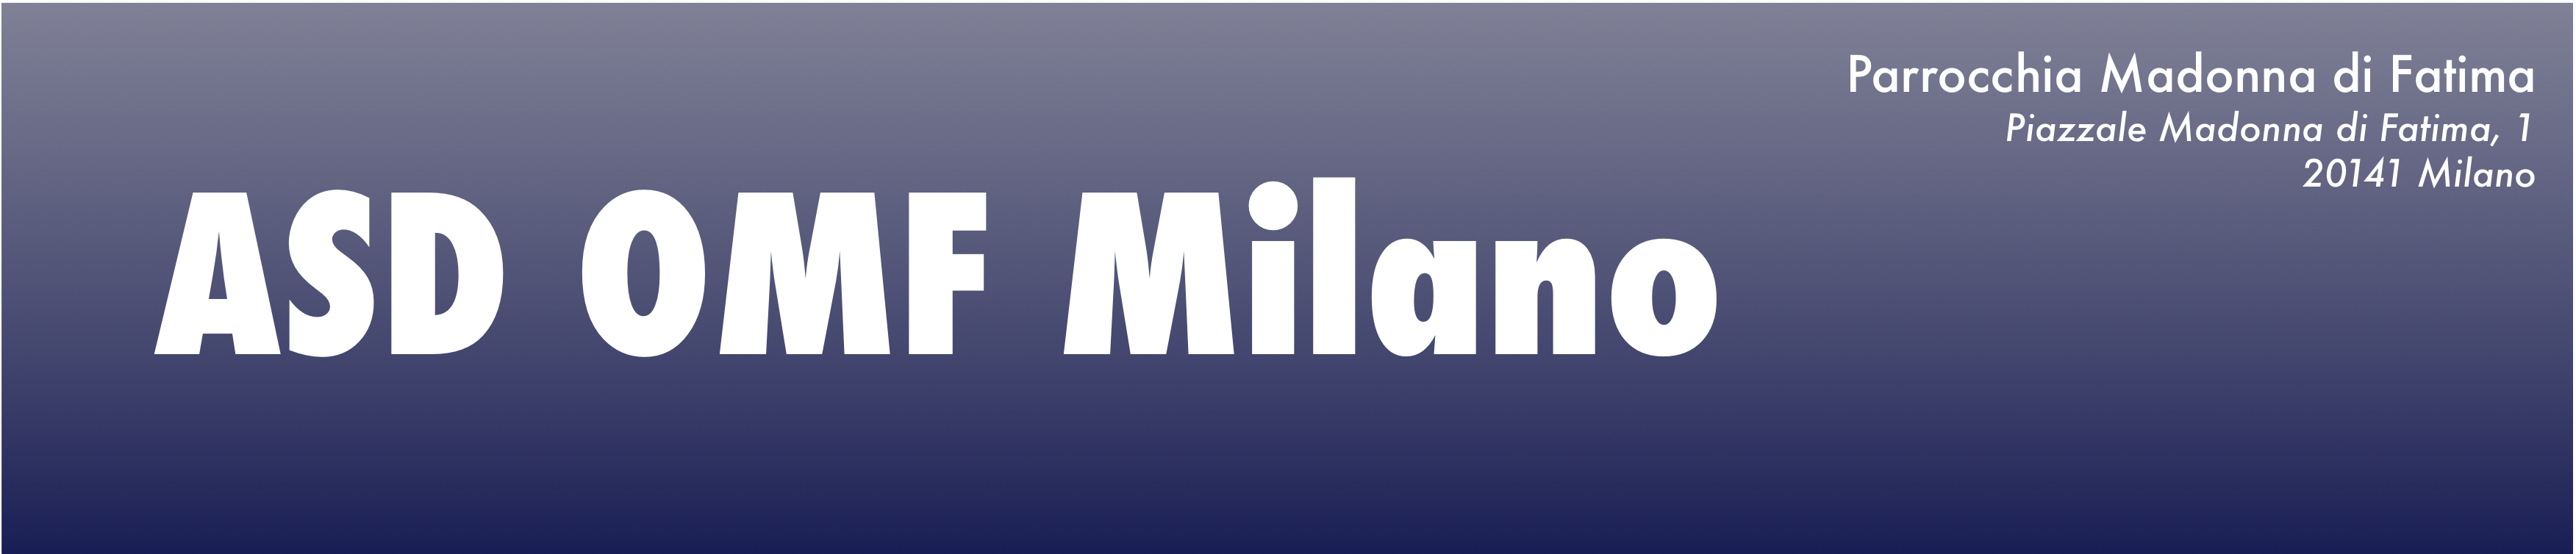 OMFMilano_newsletter_logo